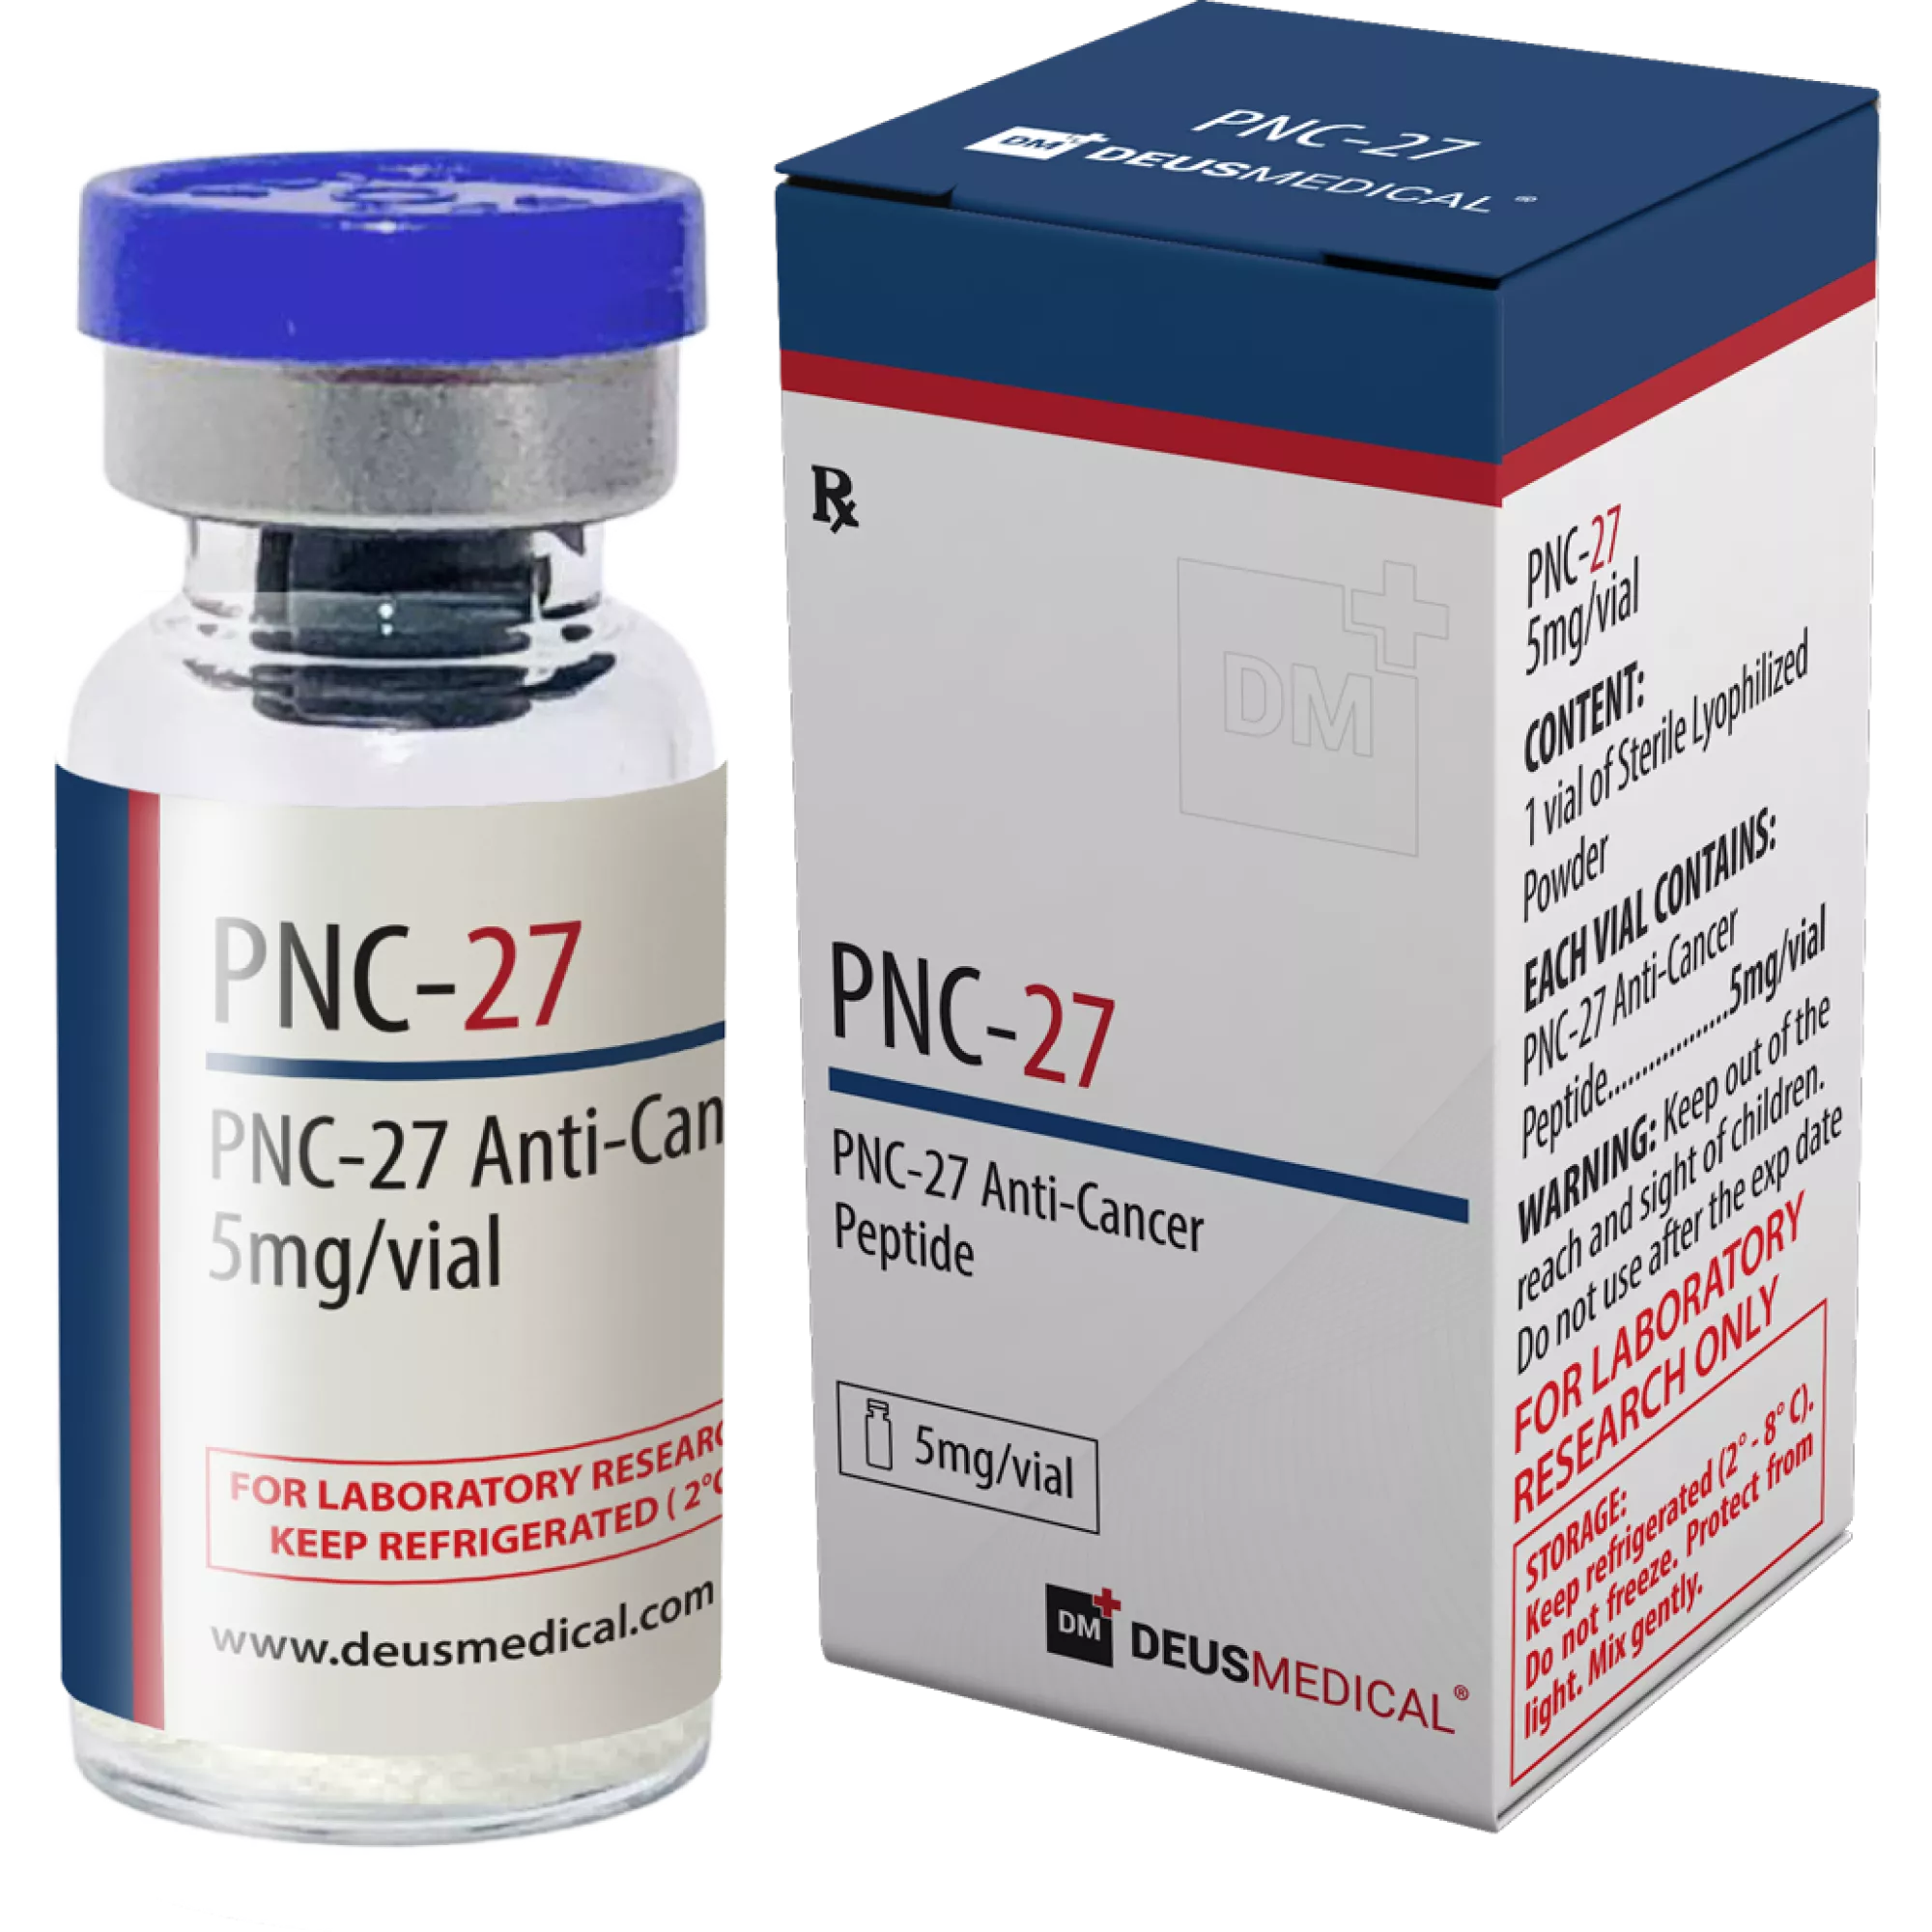 PNC-27 (PNC-27 Anti-cancer Peptide), Deus Medical, Buy Steroids Online - www.deuspower.shop